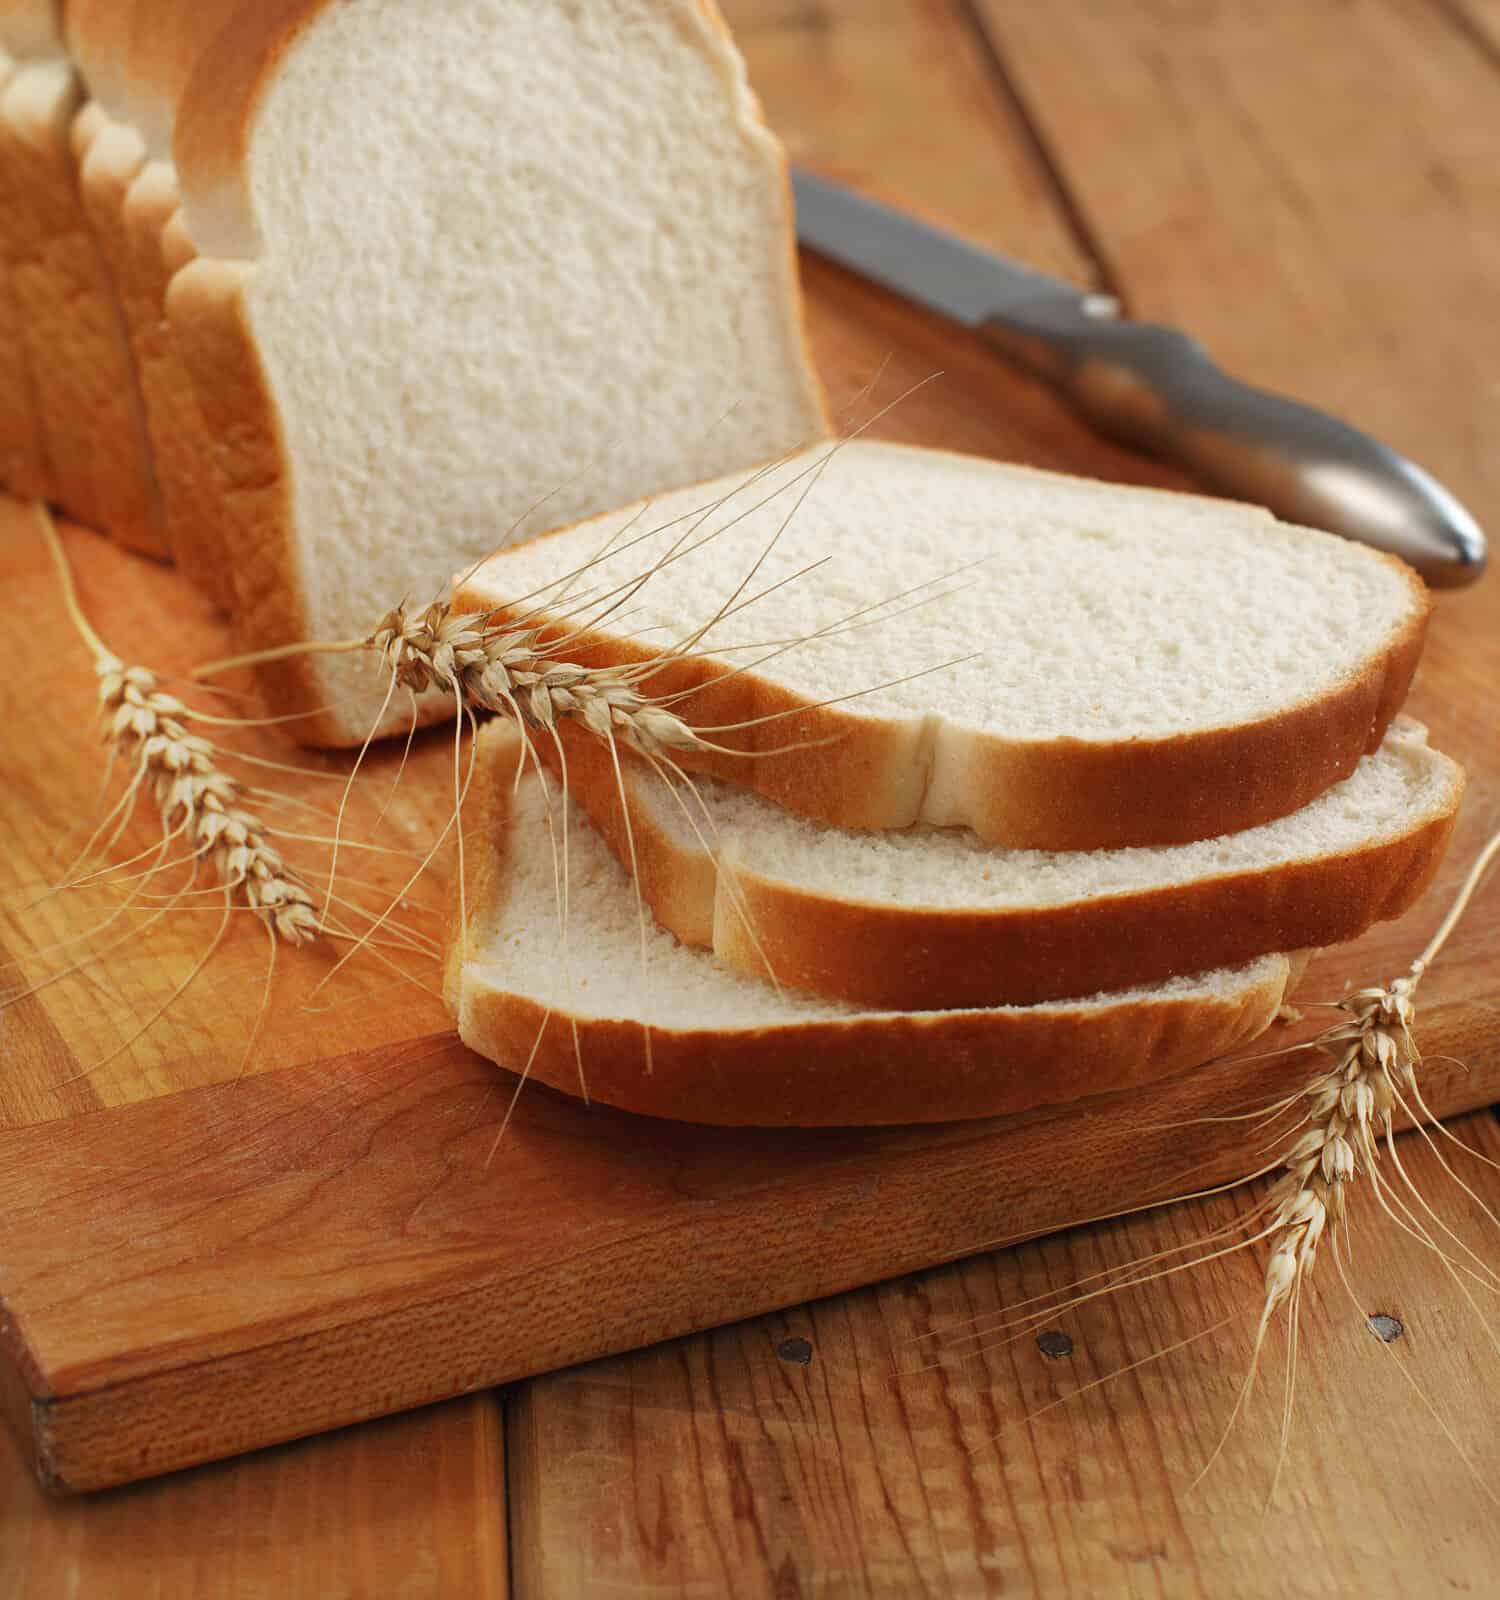 White bread vs. wheat bread: White bread sliced on a cutting board